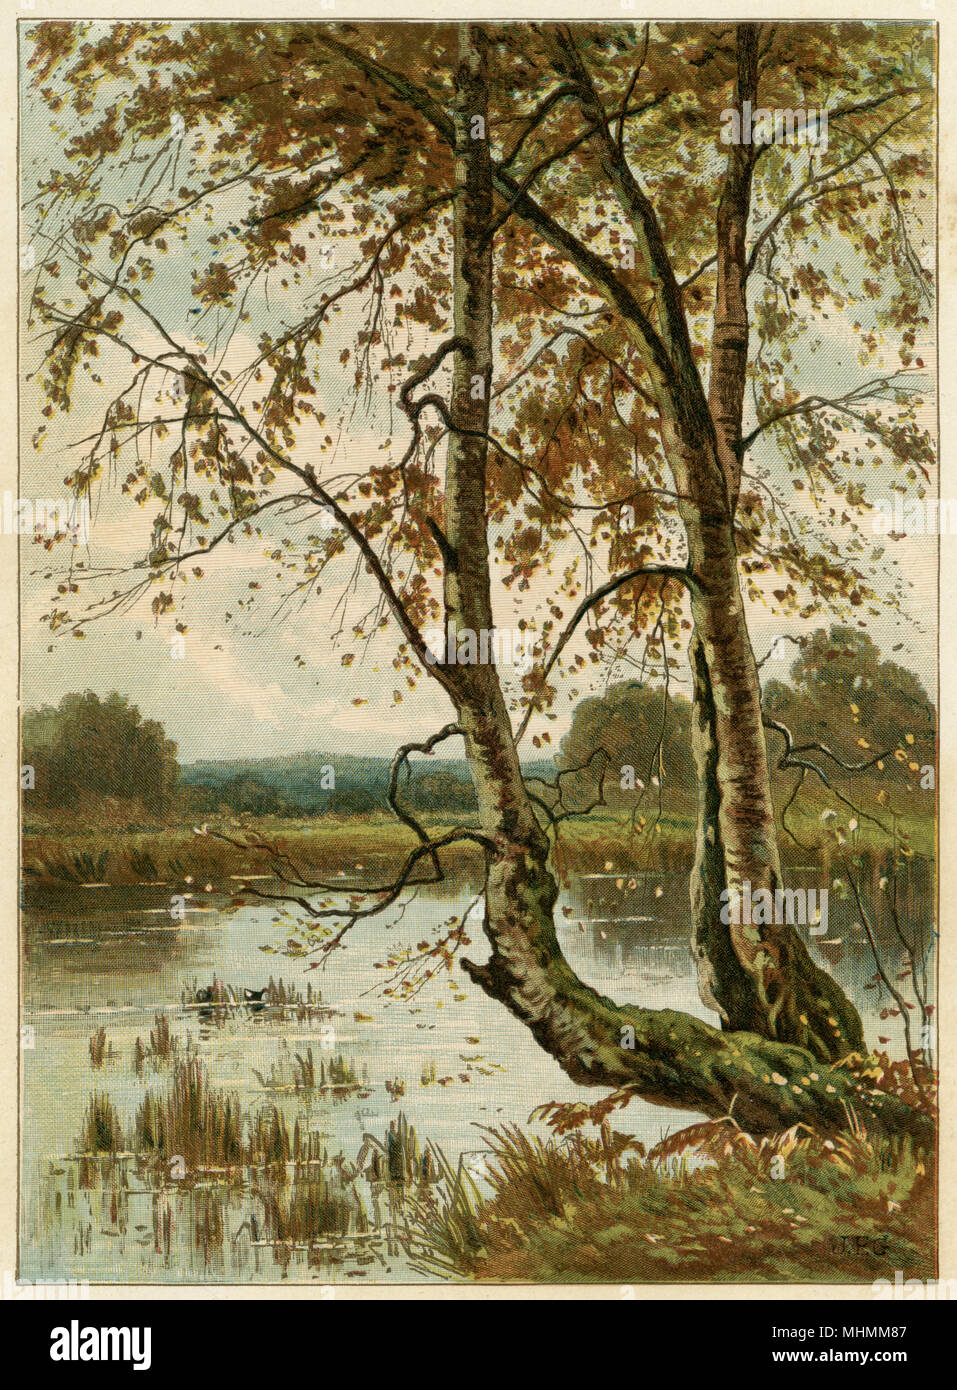 El estanque en otoño, con las aves acuáticas entre los juncos. Fecha: 1885 Foto de stock